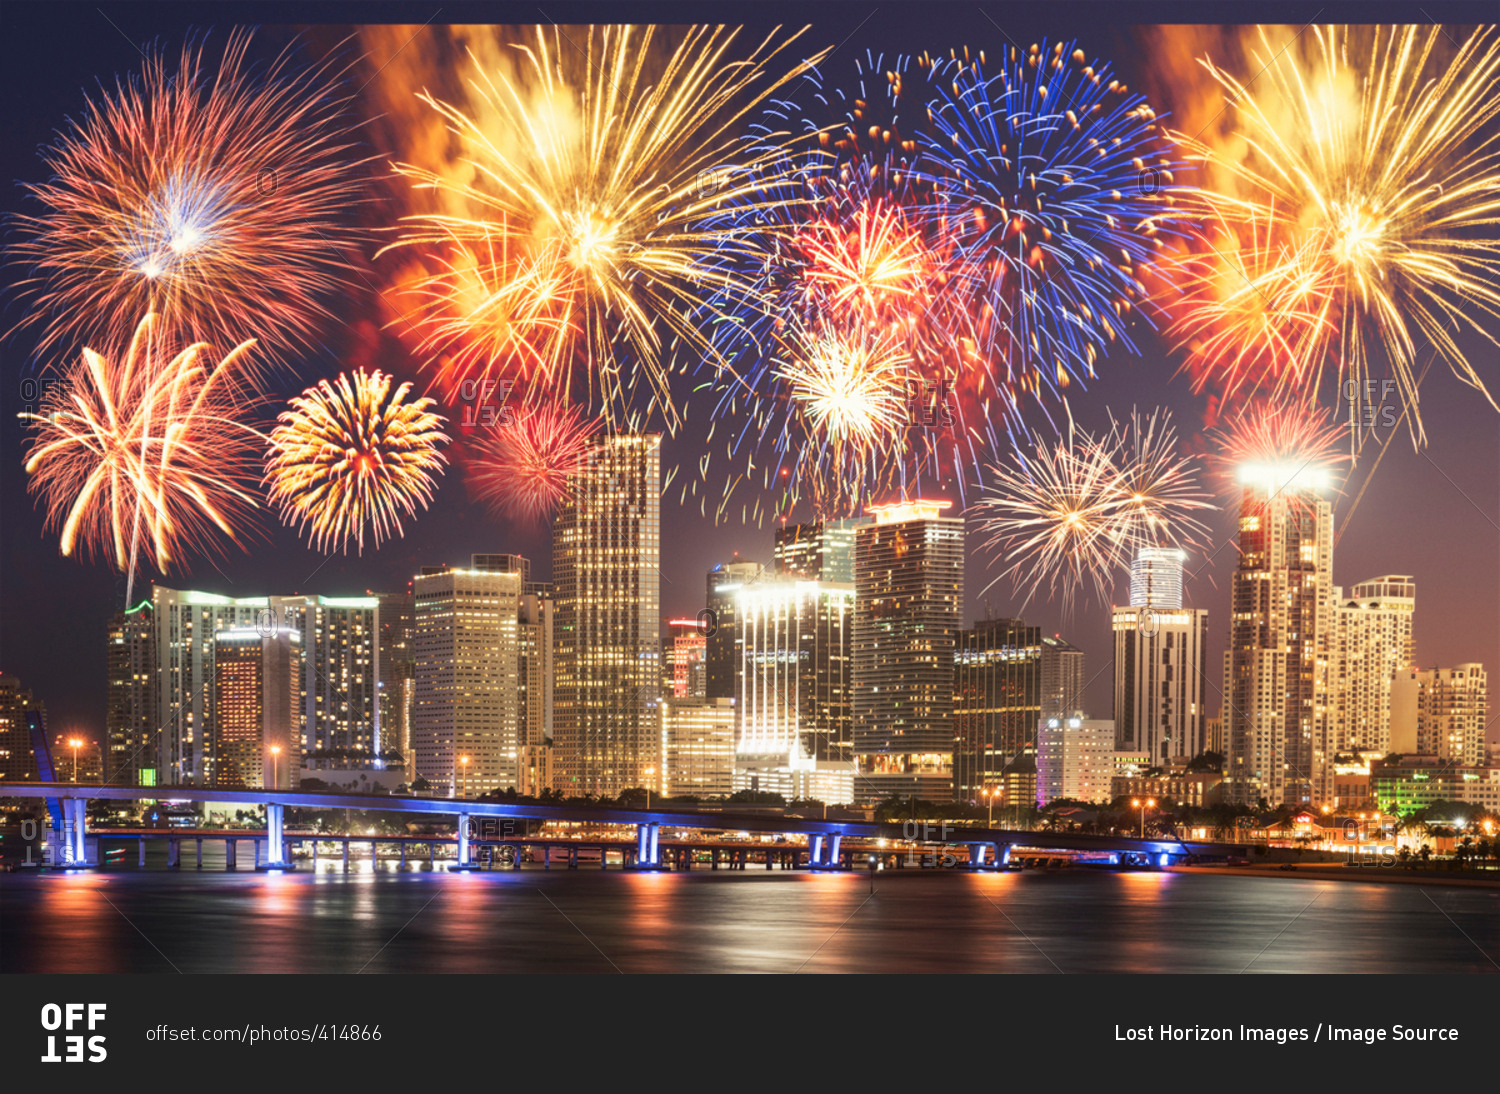 Fireworks over Miami, Florida, USA